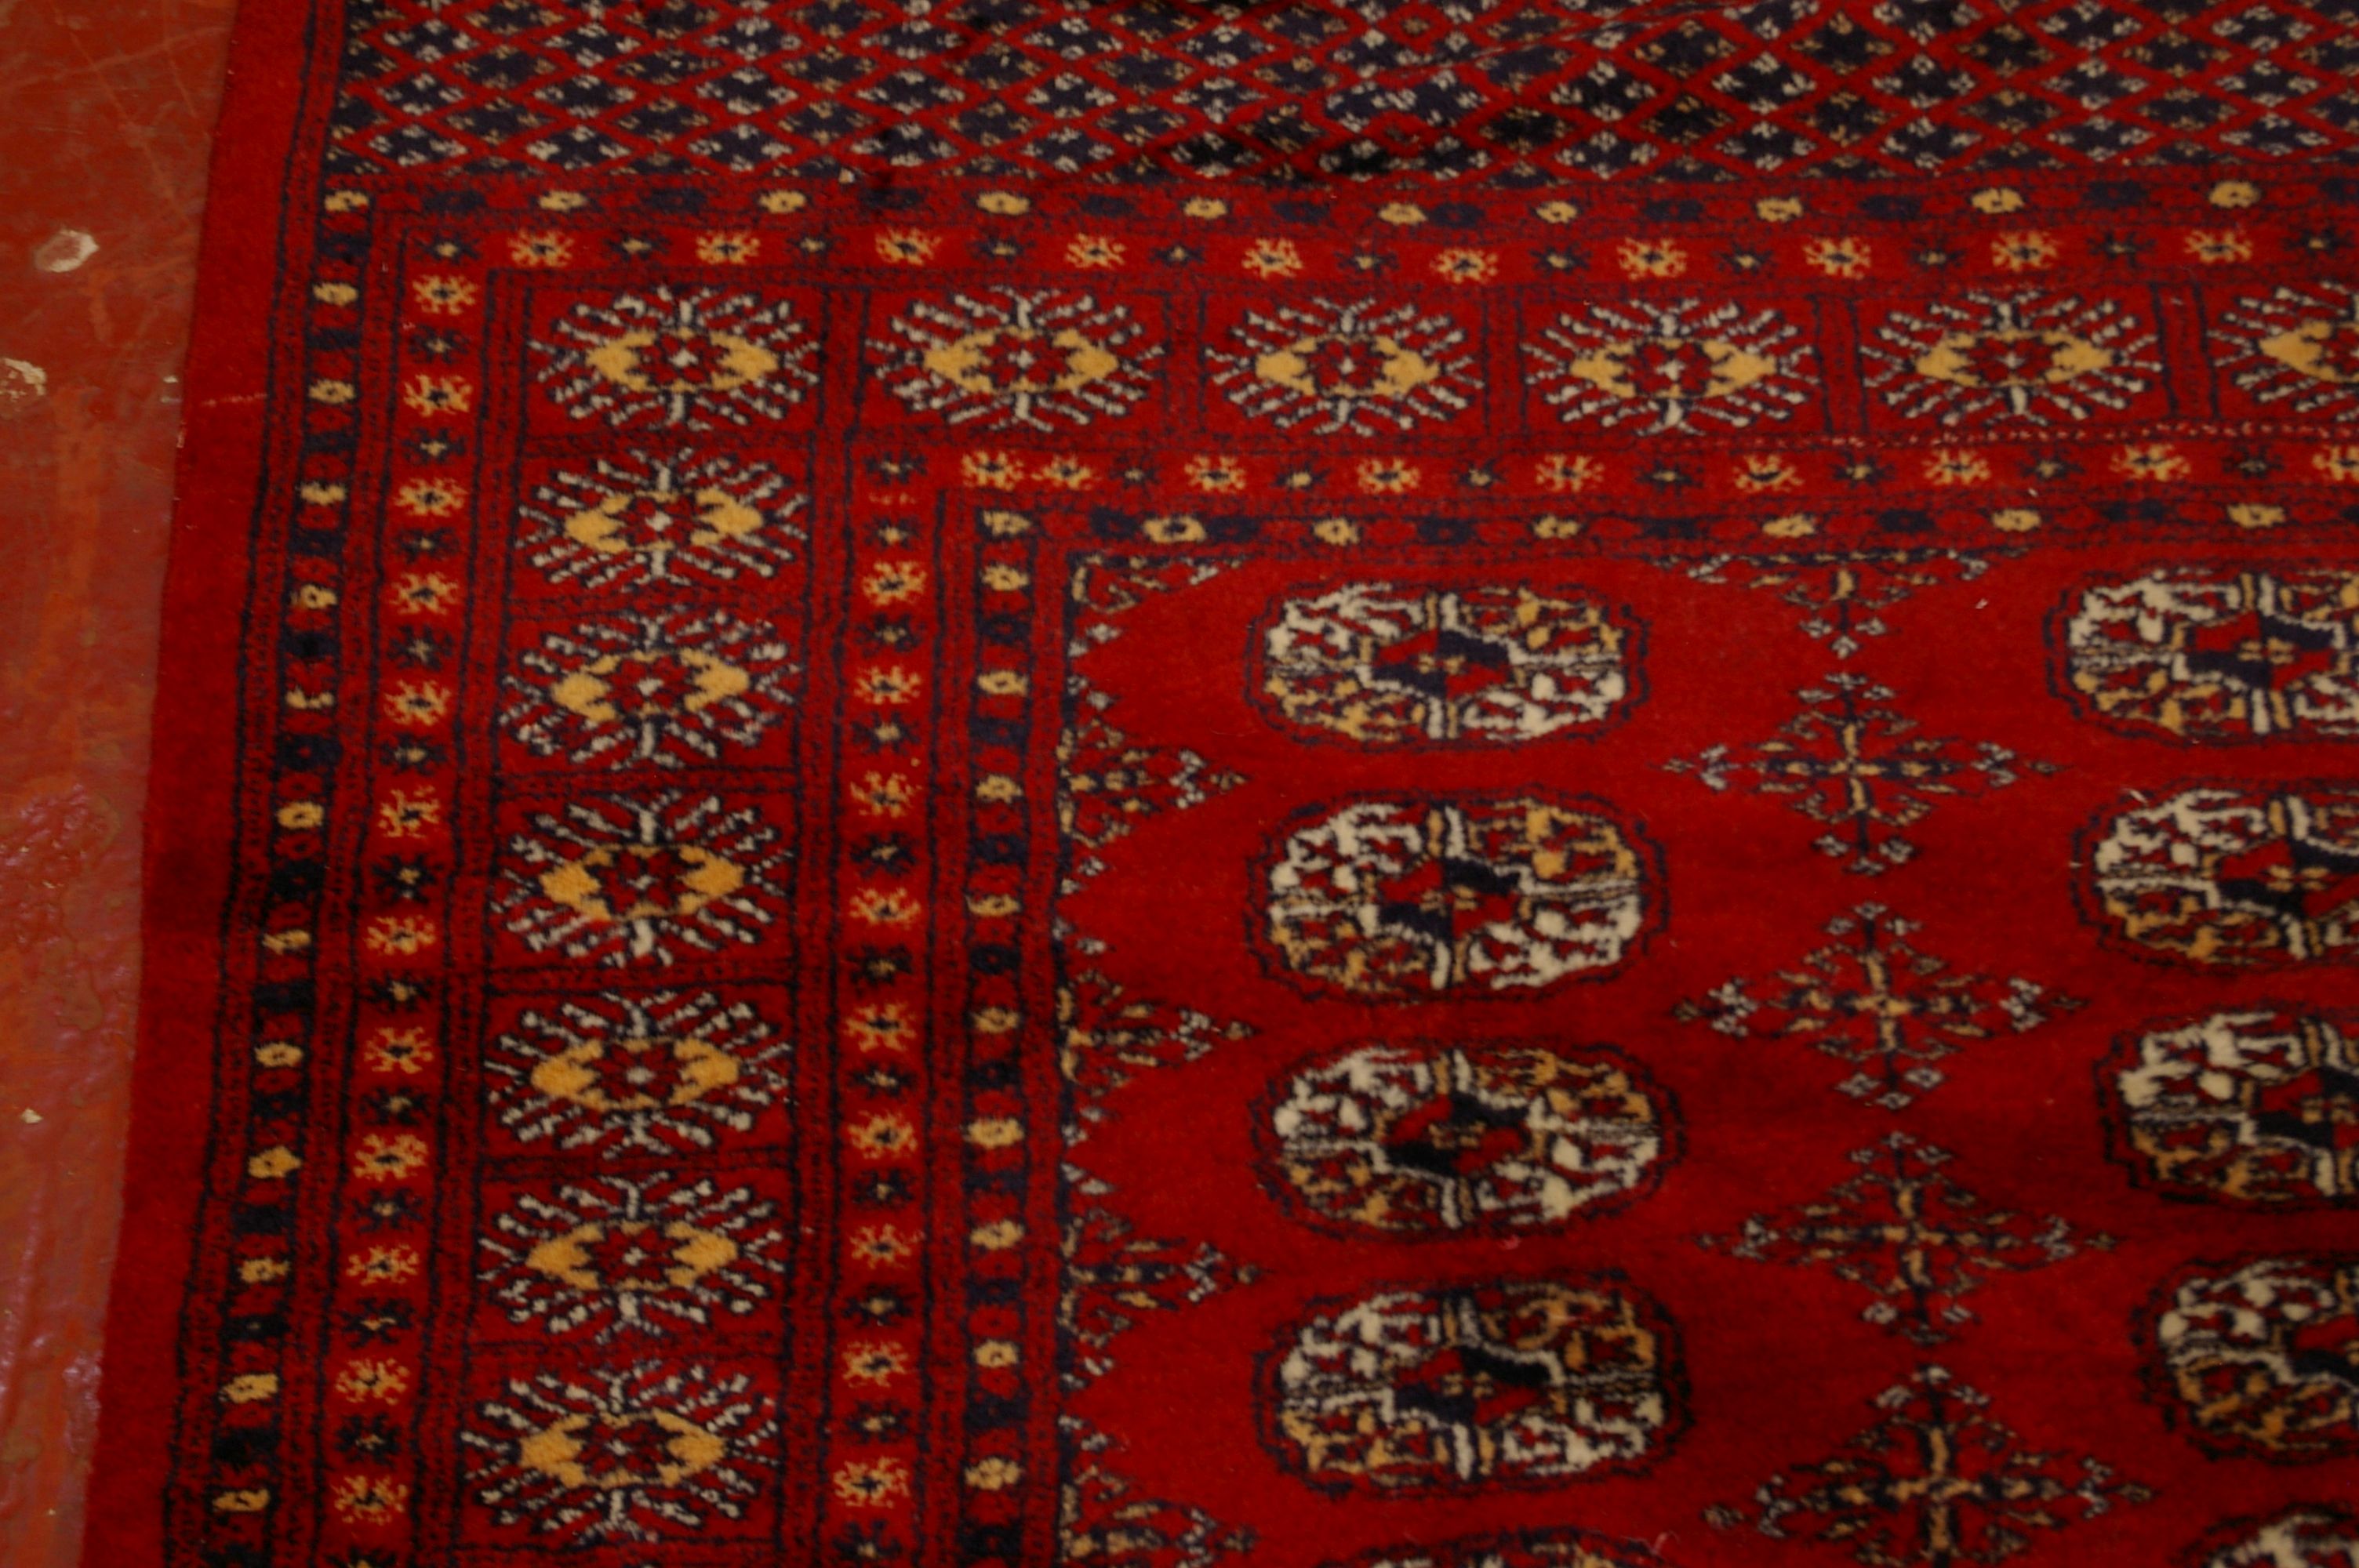 A Pakistan Bokhara carpet 310 x 100cm - Image 2 of 2